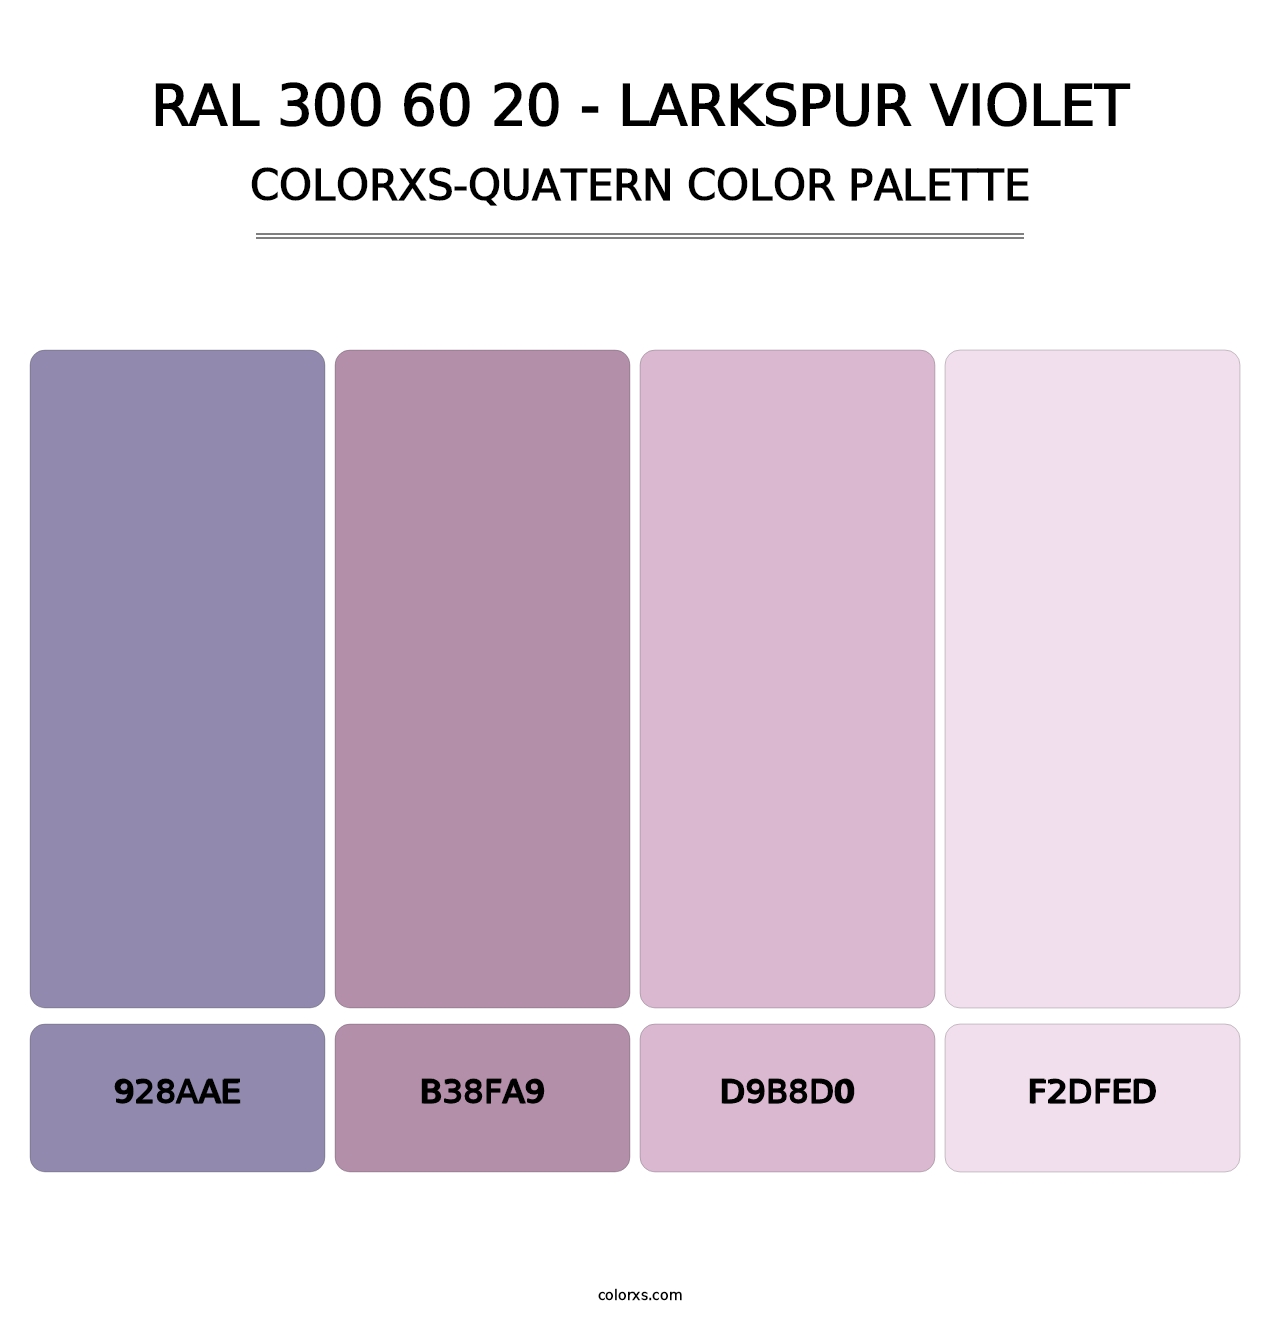 RAL 300 60 20 - Larkspur Violet - Colorxs Quatern Palette